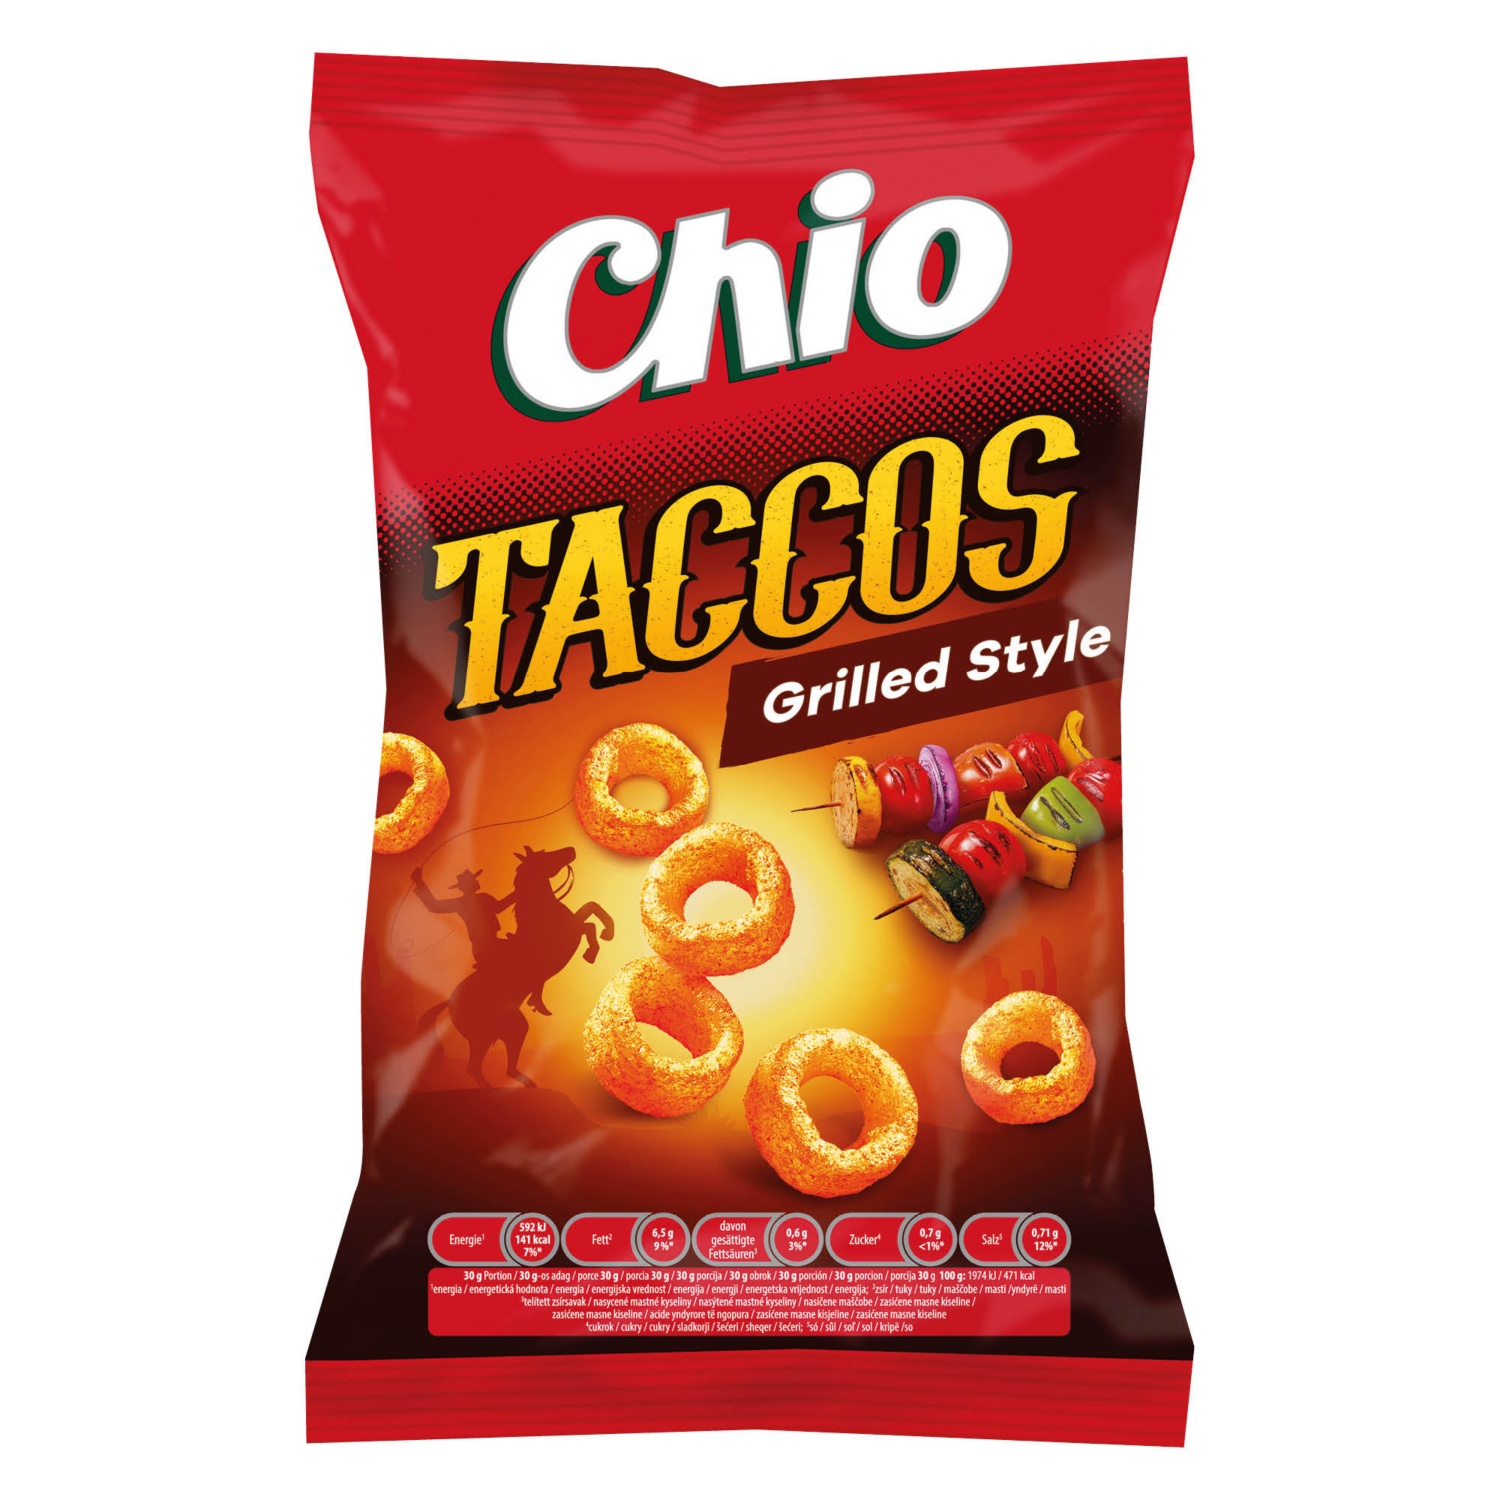 CHIO Taccos 65 g, grilles ízű